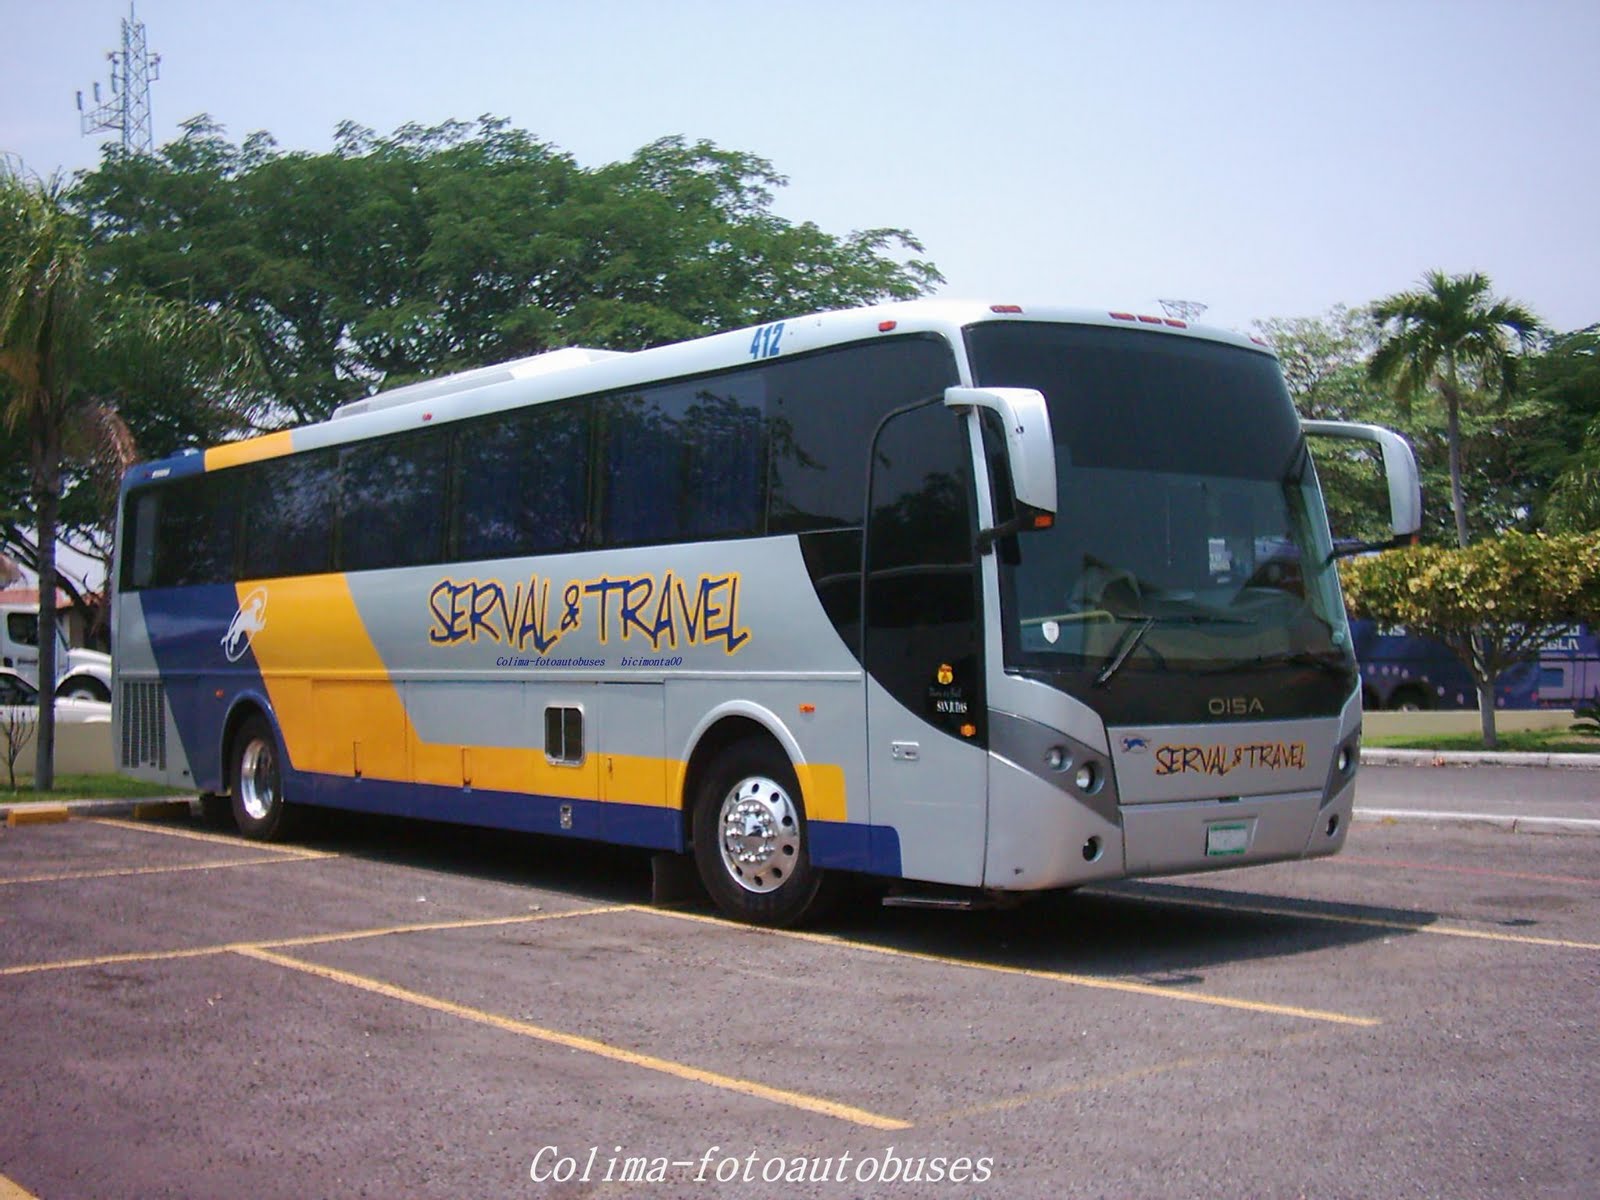 Colima_fotoautobus: mayo 2011